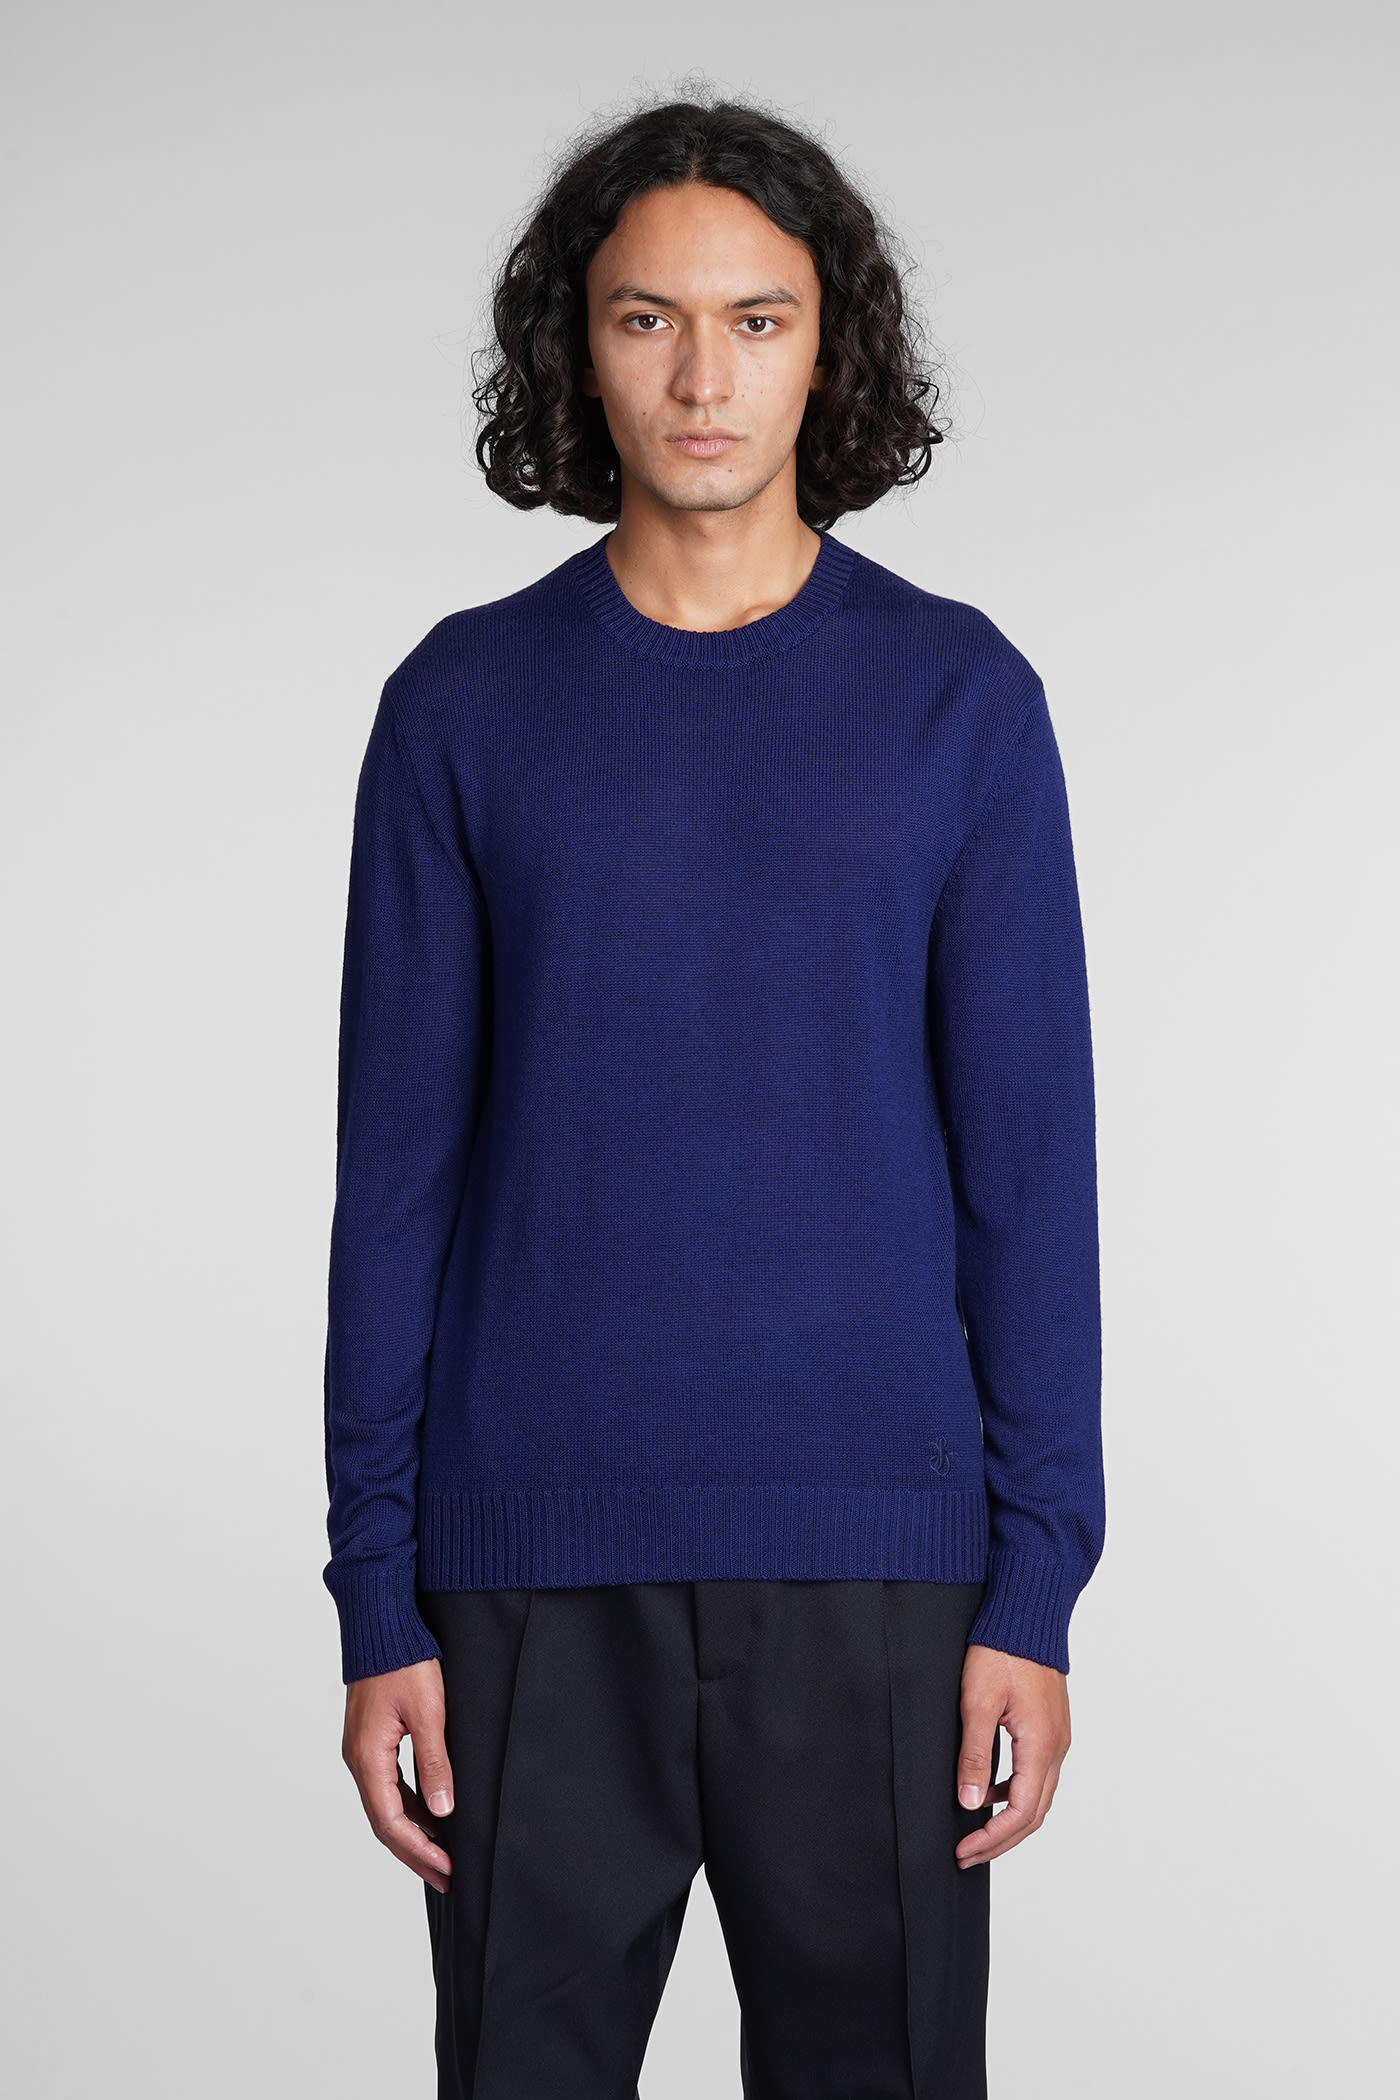 Jil Sander Knitwear In Blue Wool